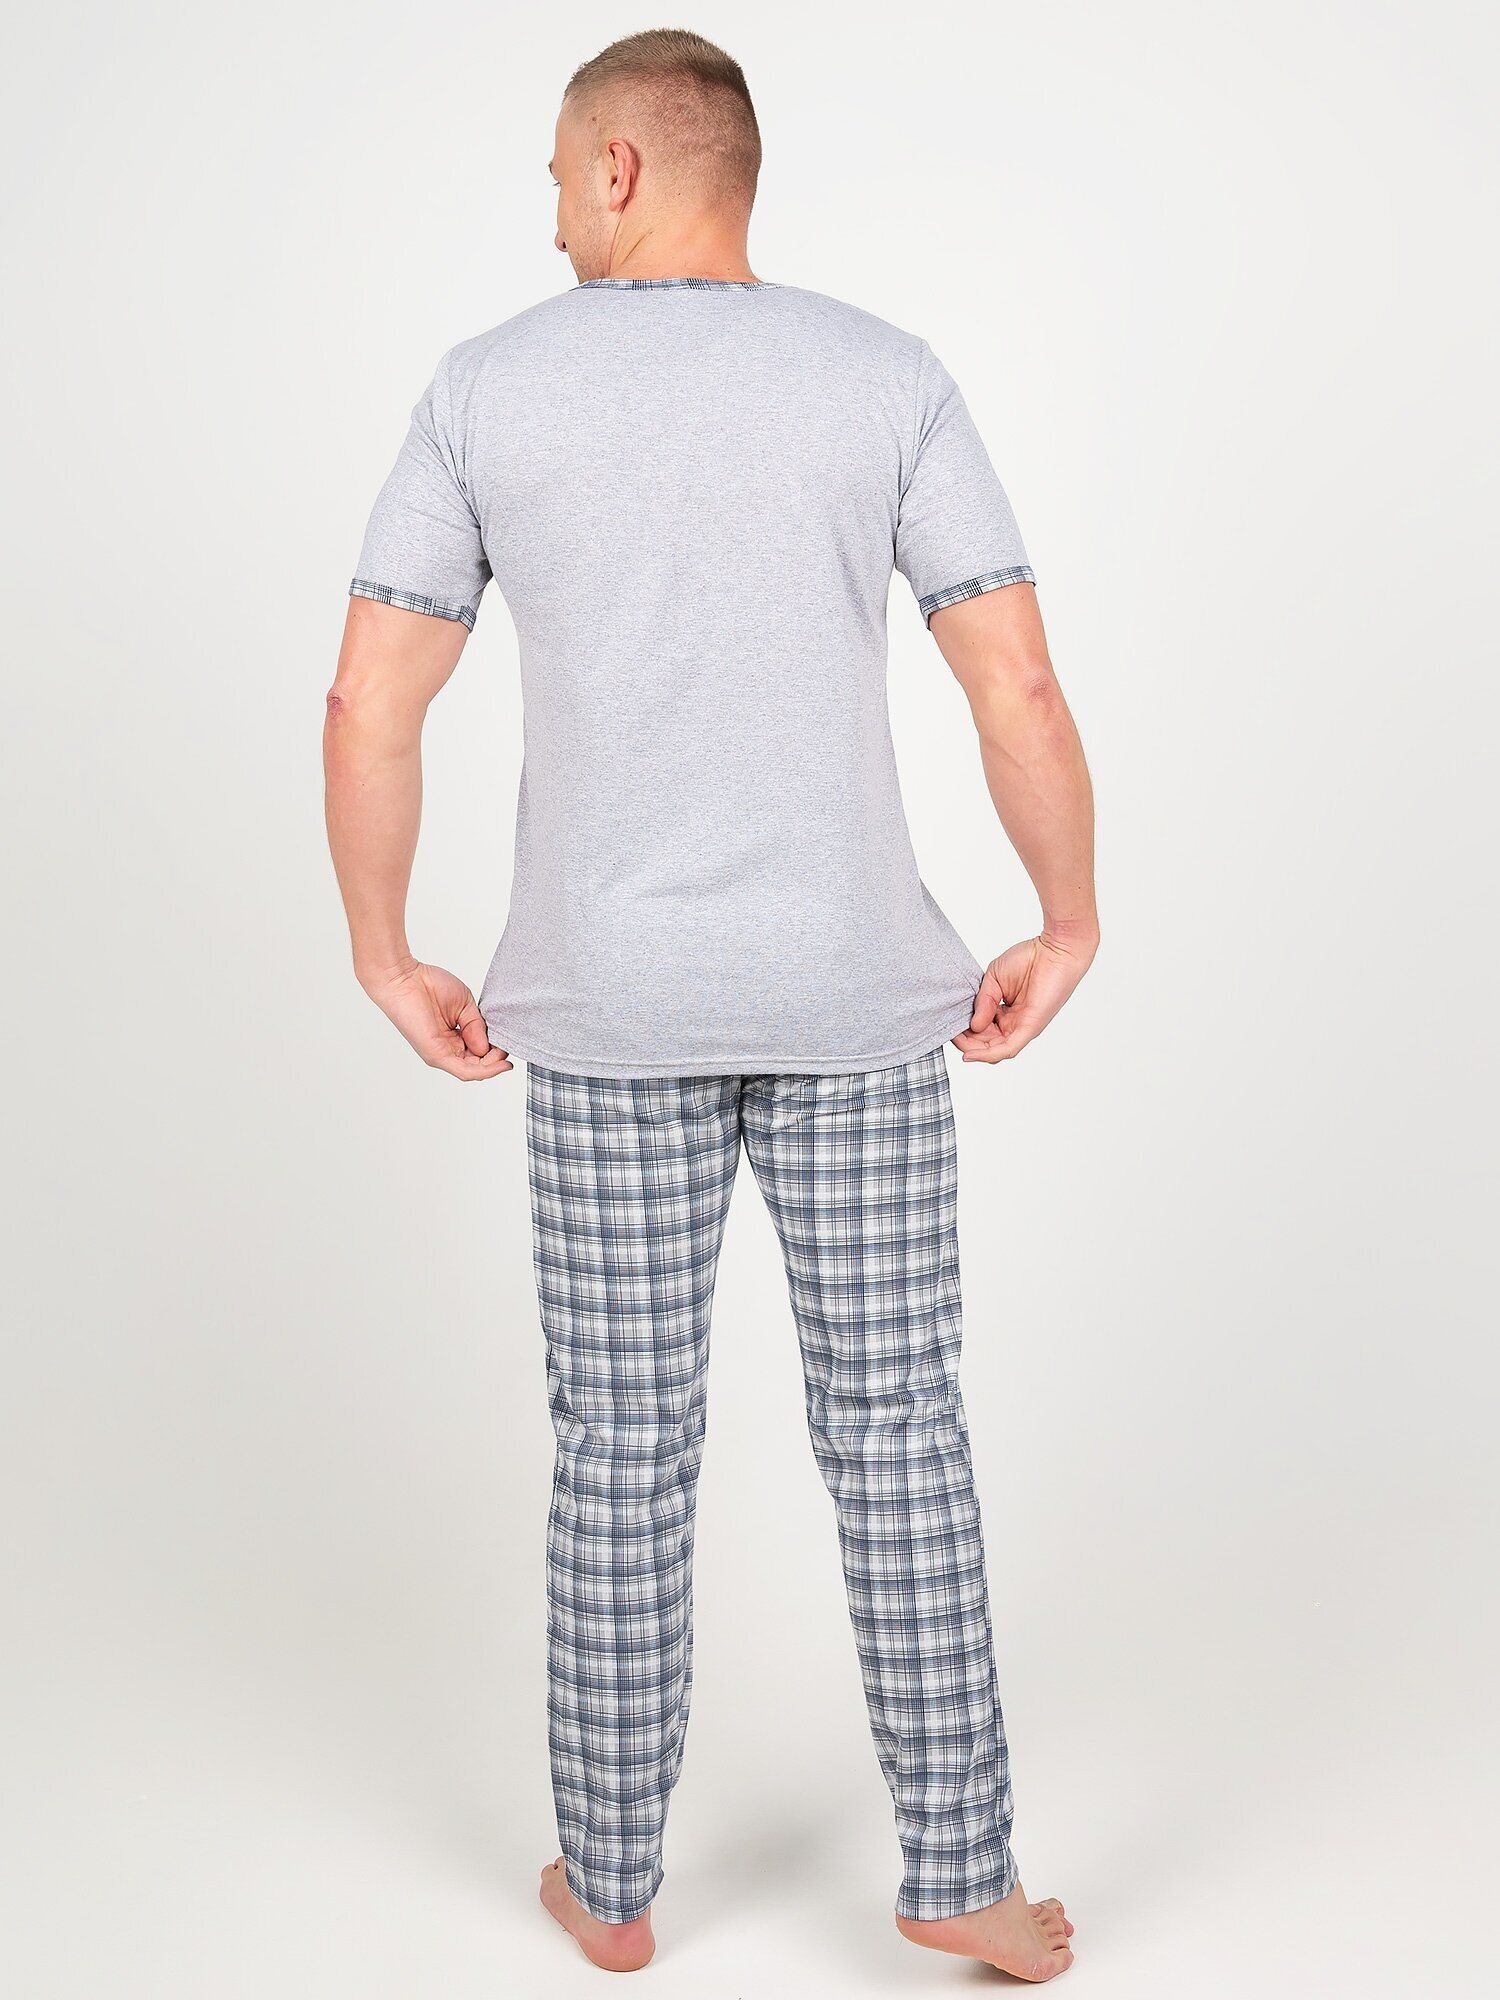 Пижама мужская, Ивелена, серая, 48 размер - фотография № 9